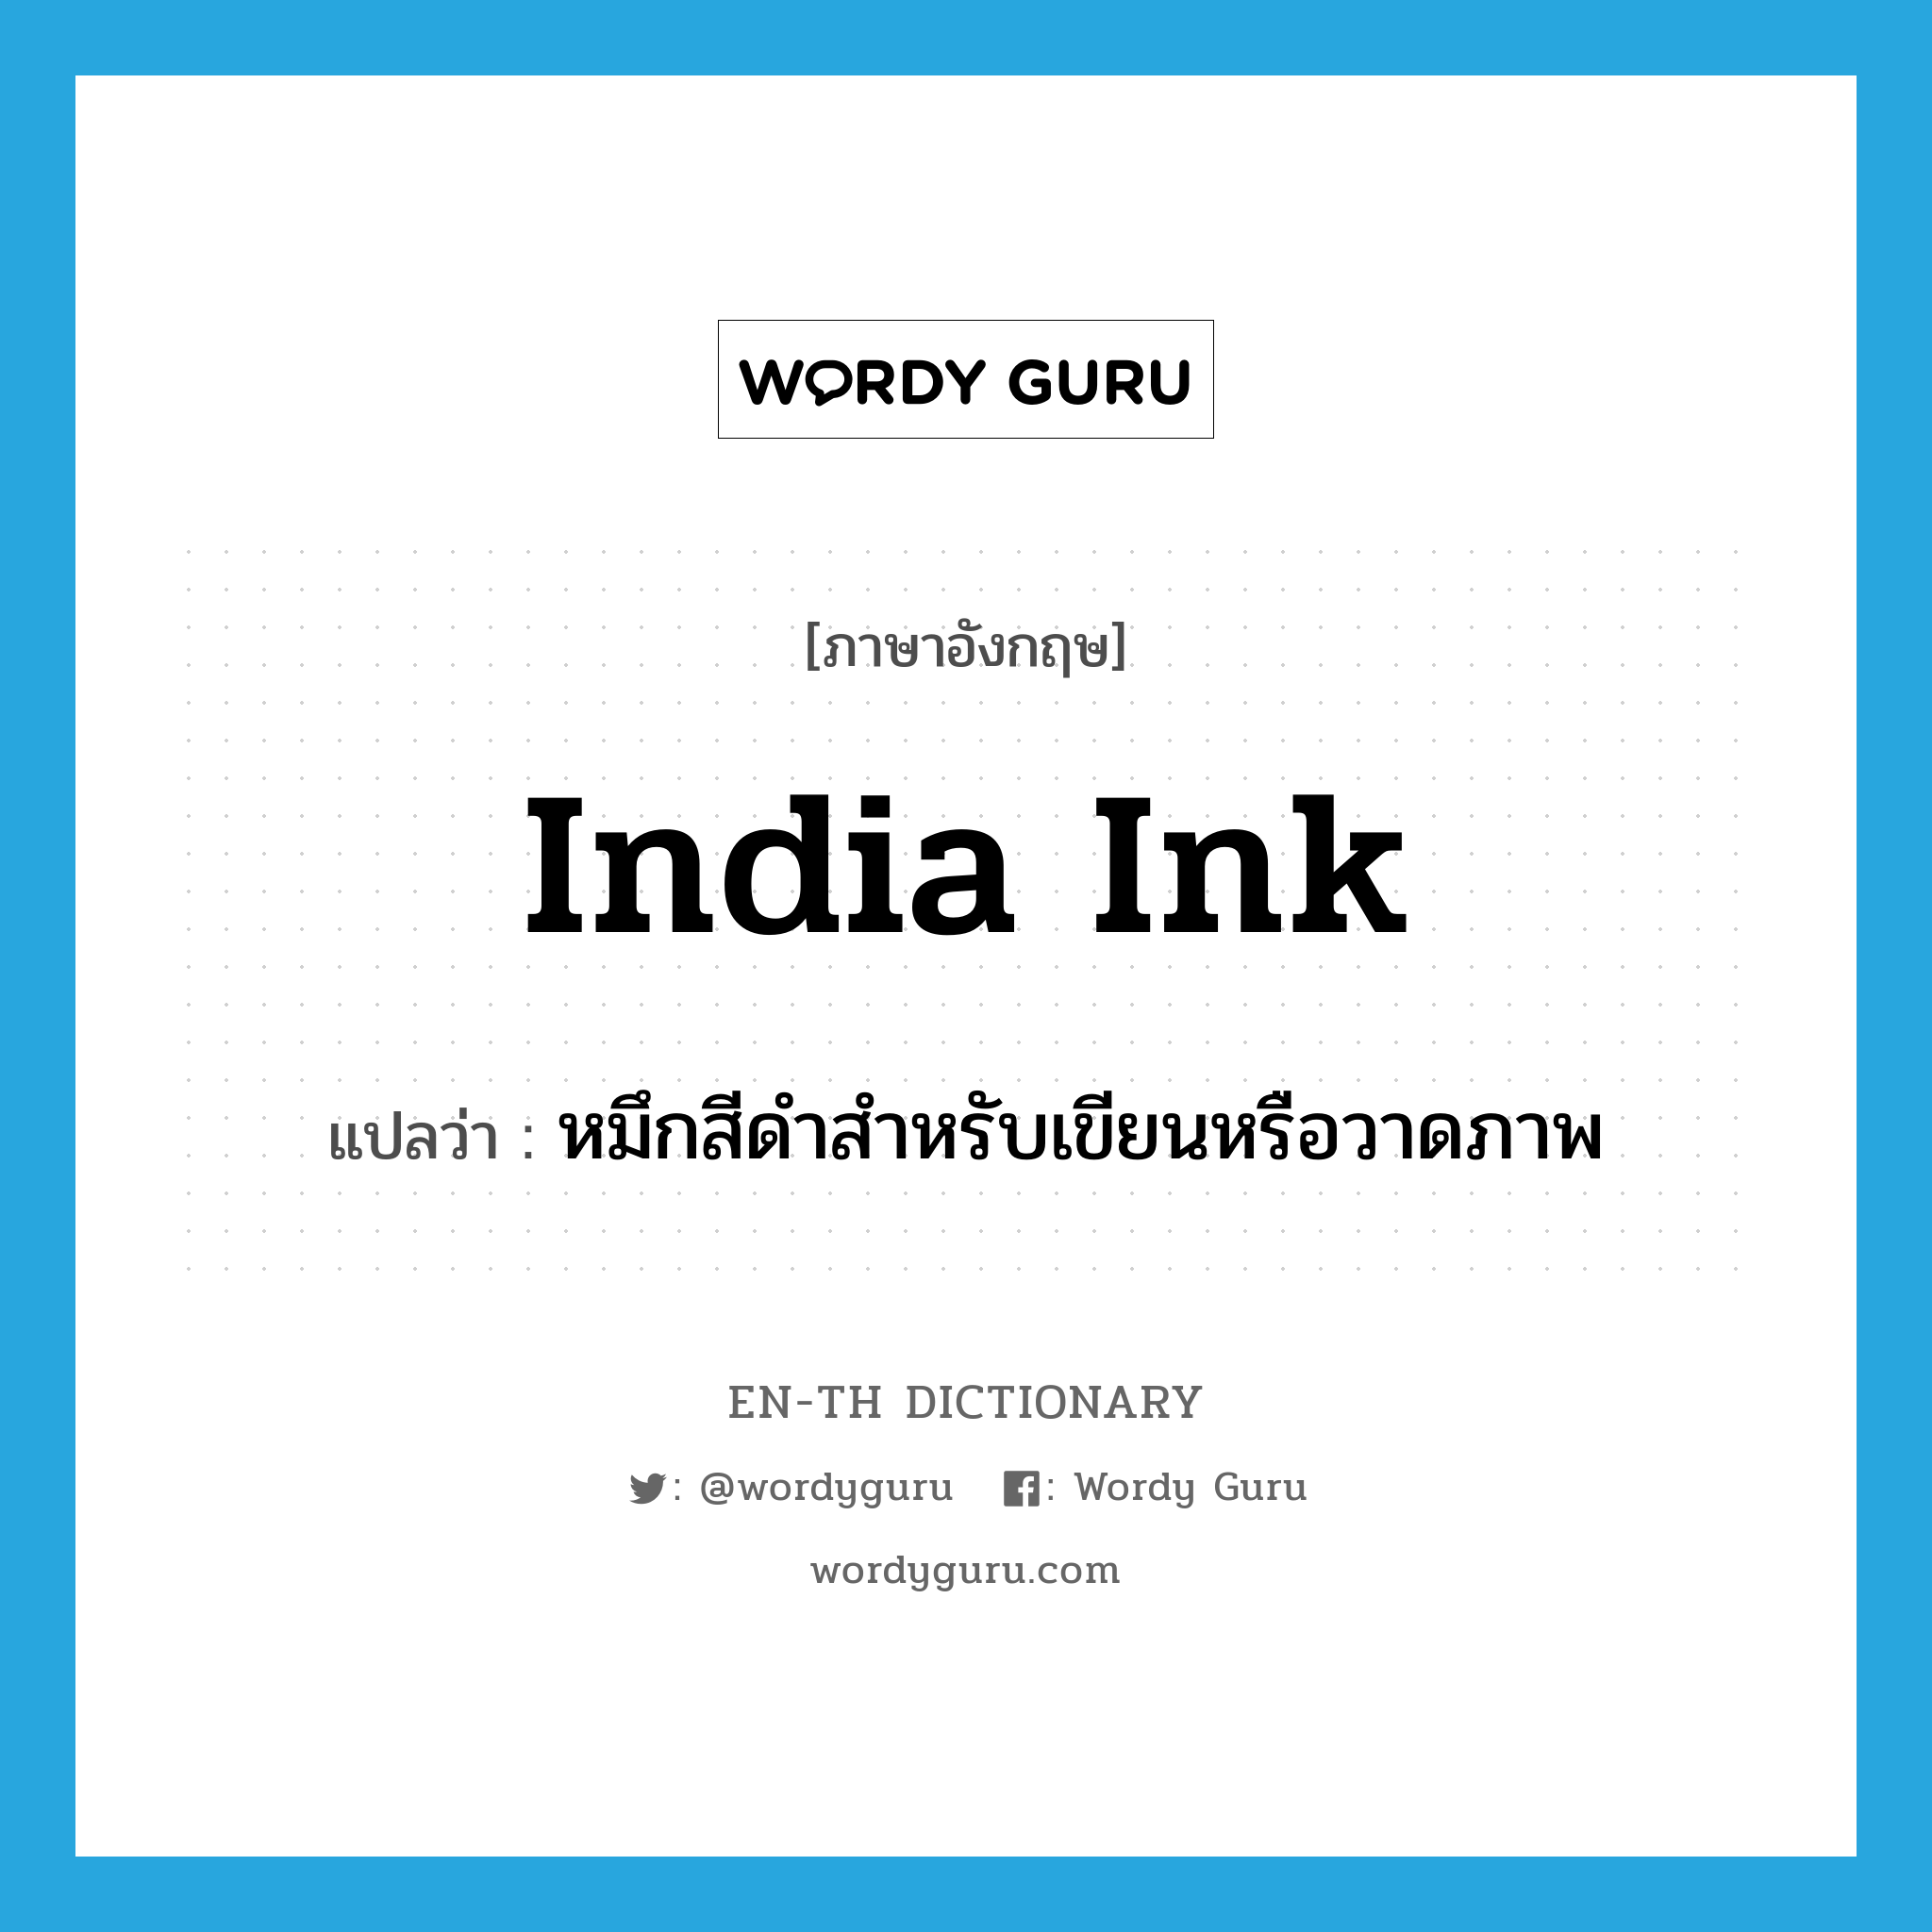 India ink แปลว่า?, คำศัพท์ภาษาอังกฤษ India ink แปลว่า หมึกสีดำสำหรับเขียนหรือวาดภาพ ประเภท N หมวด N